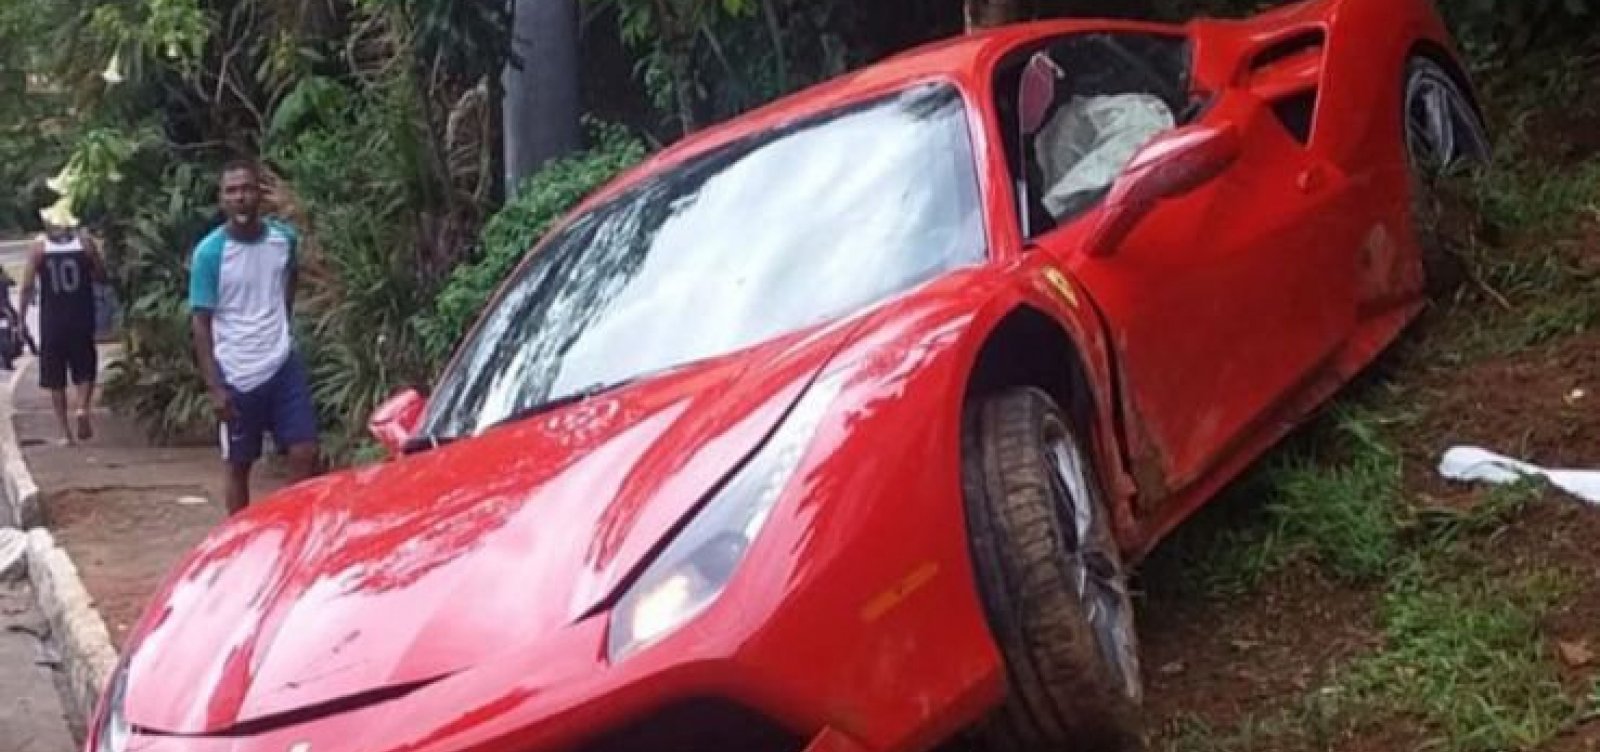 Motorista de Ferrari perde controle do carro na região do Vale do Canela, em Salvador 